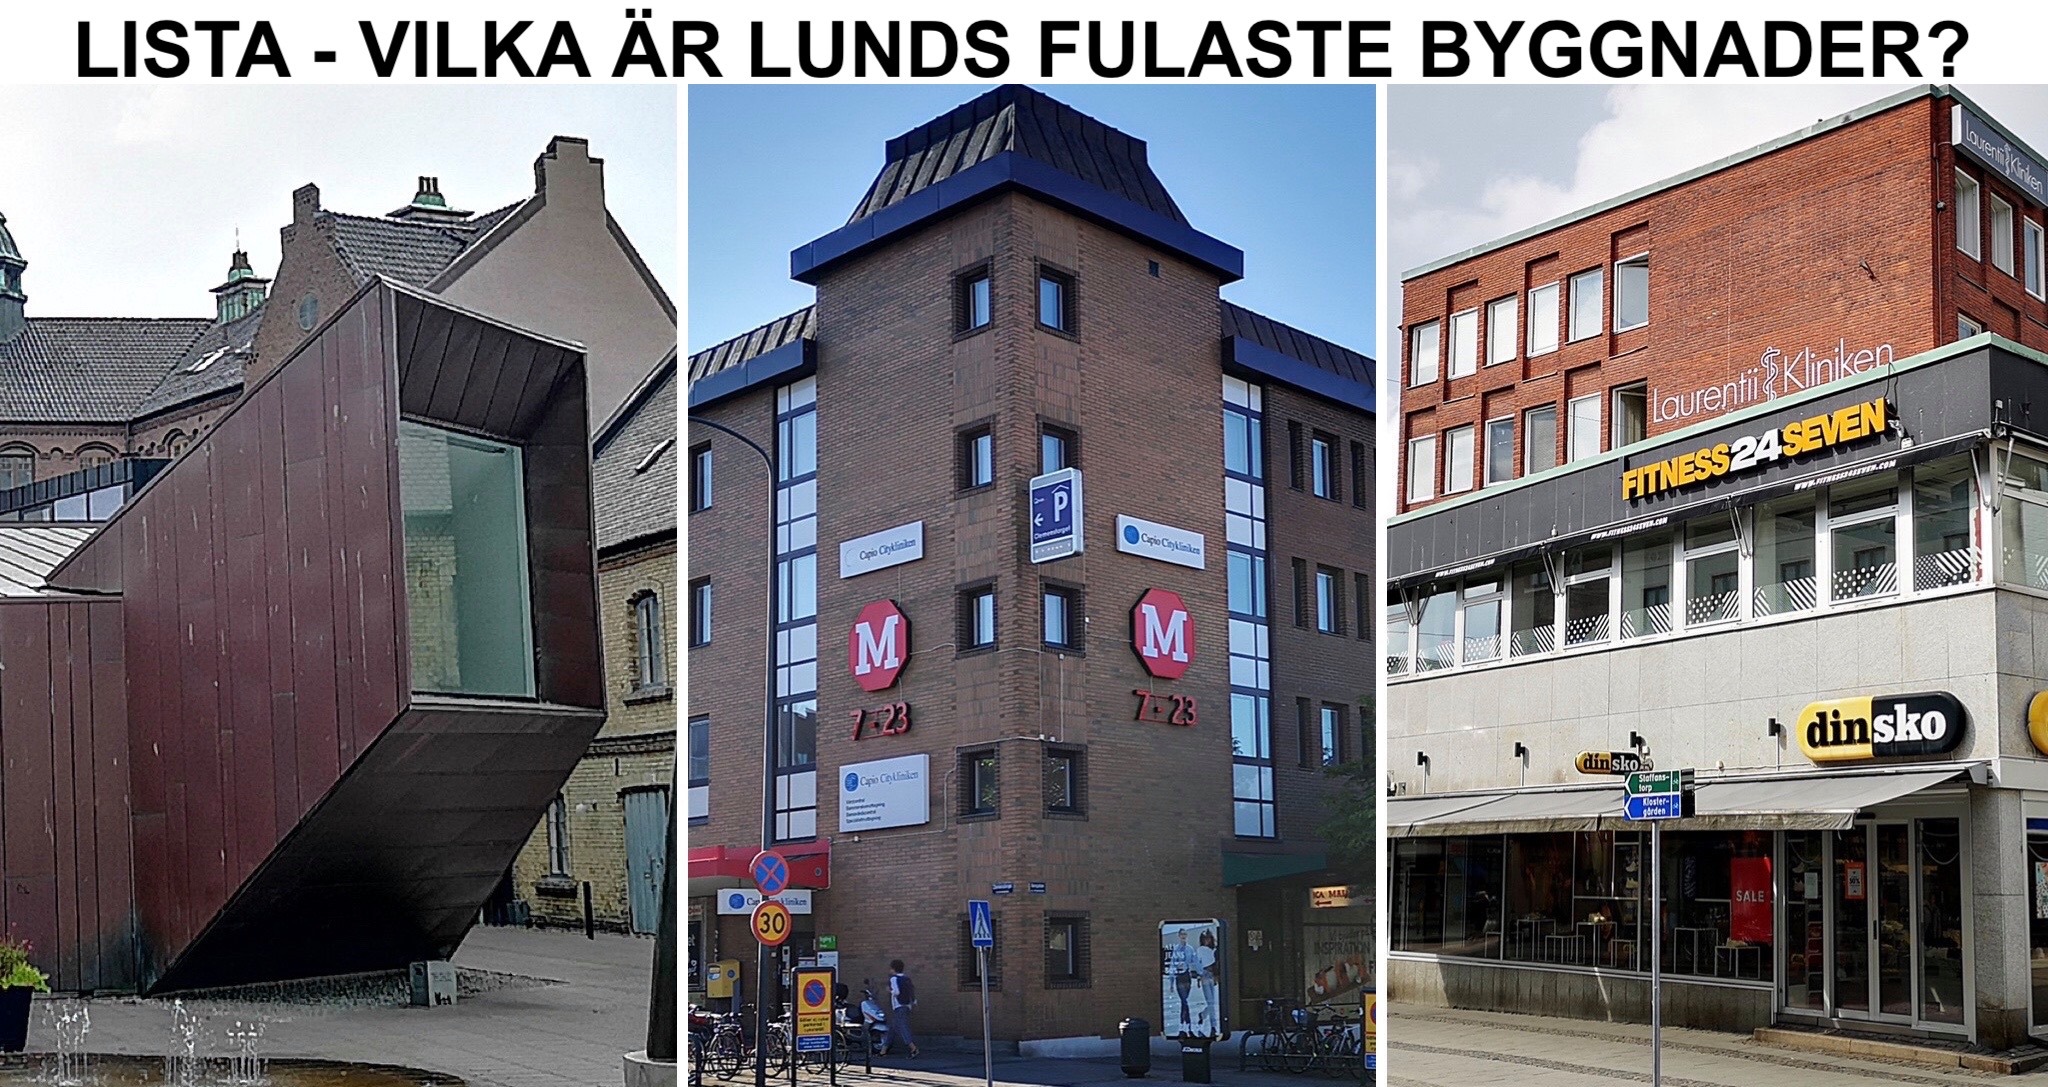 Lista - Lunds fulaste byggnader.